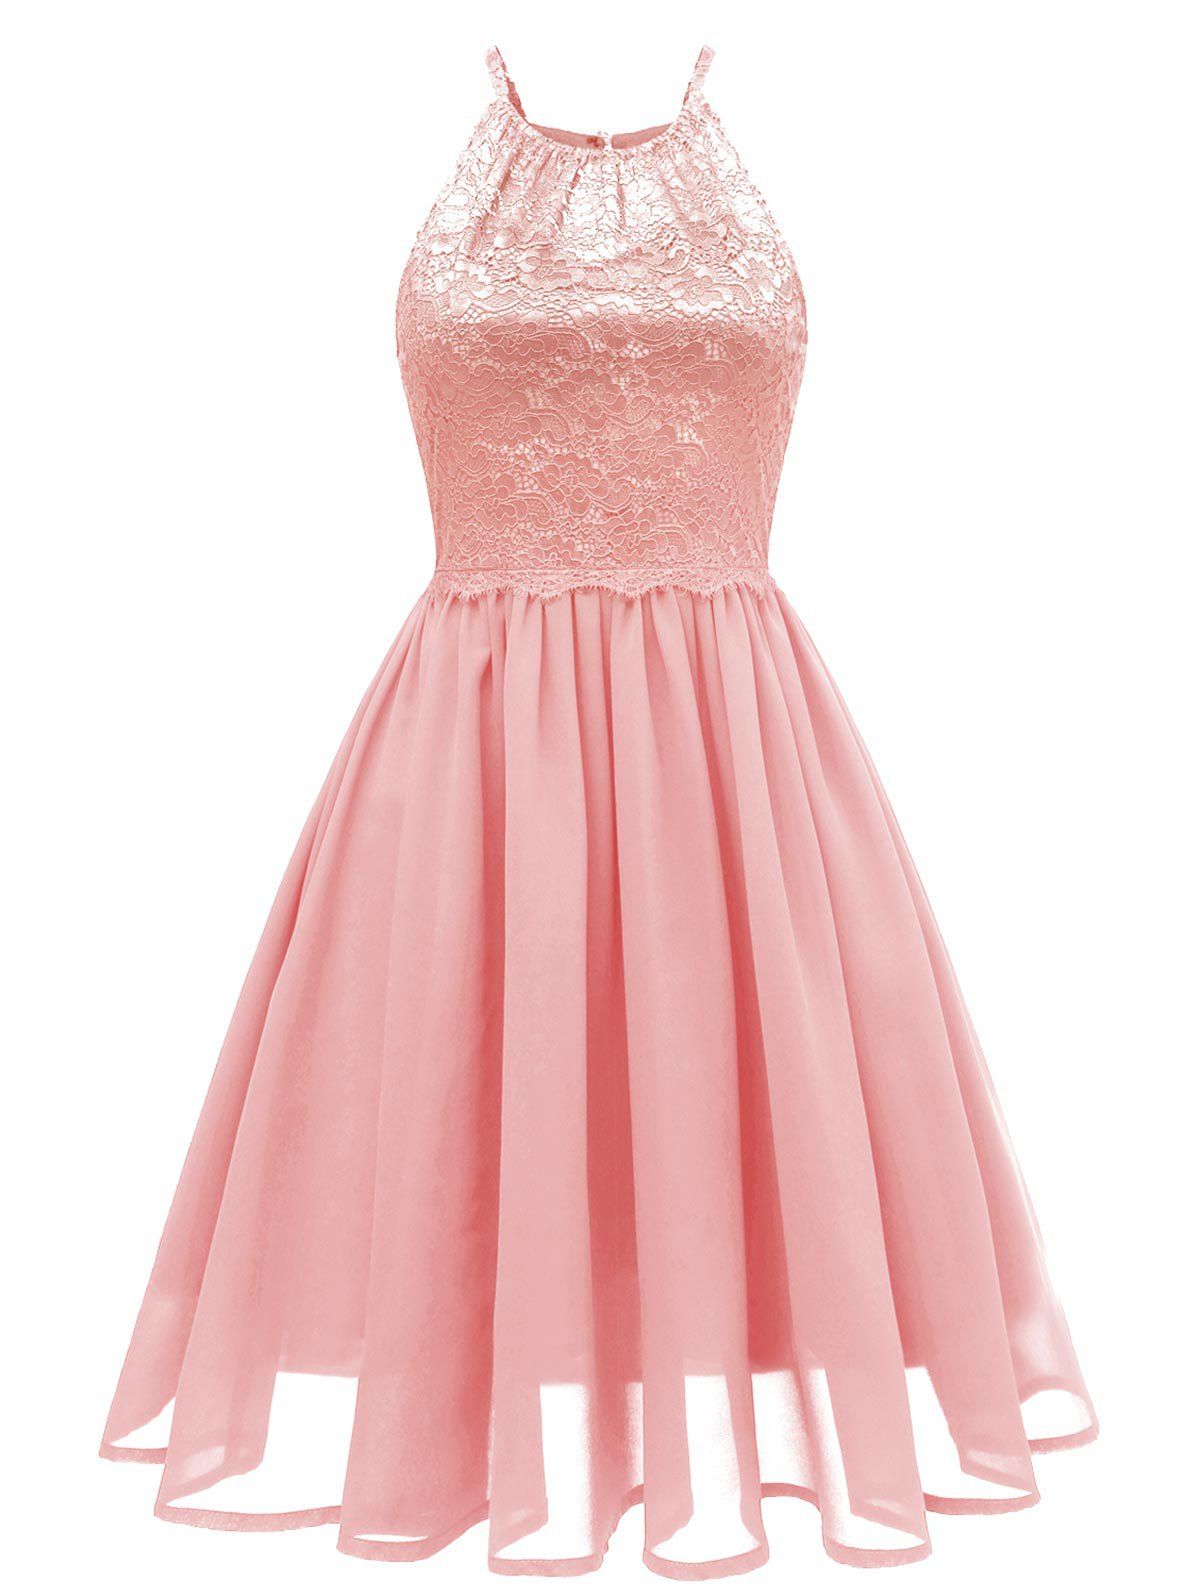 Lace Insert Cutout Sleeveless Dress - LIGHT PINK L